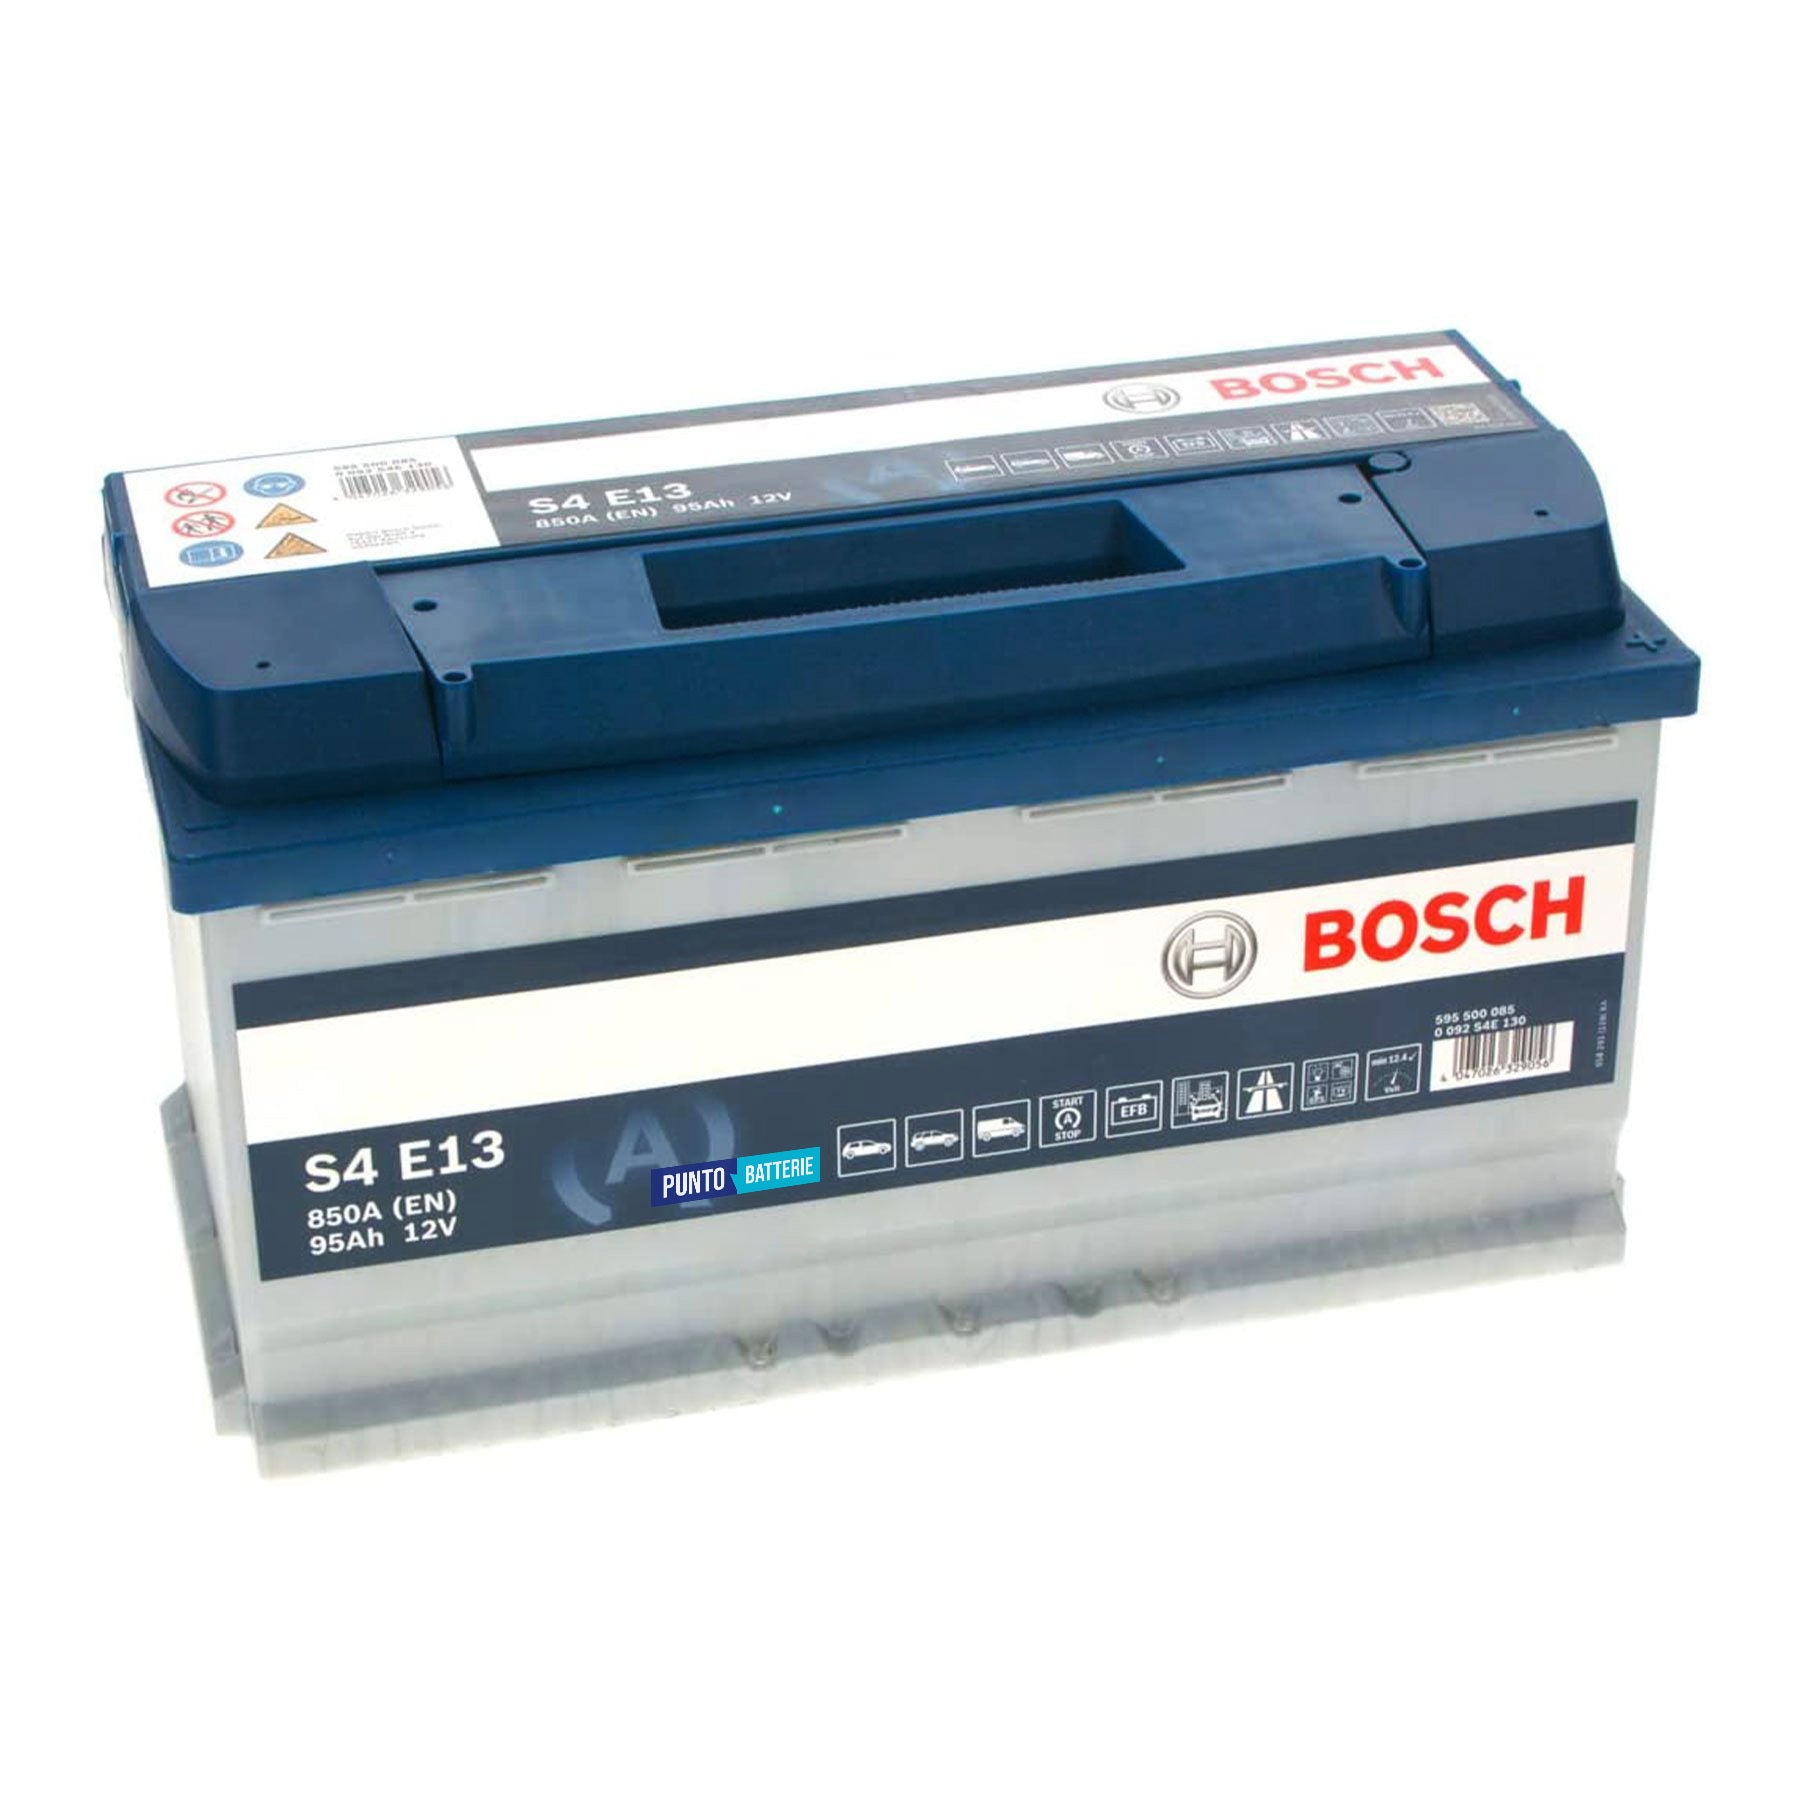 Batteria originale Bosch S4E S4 E13, dimensioni 353 x 175 x 190, polo positivo a destra, 12 volt, 95 amperora, 850 ampere, EFB. Batteria per auto e veicoli leggeri con start e stop.